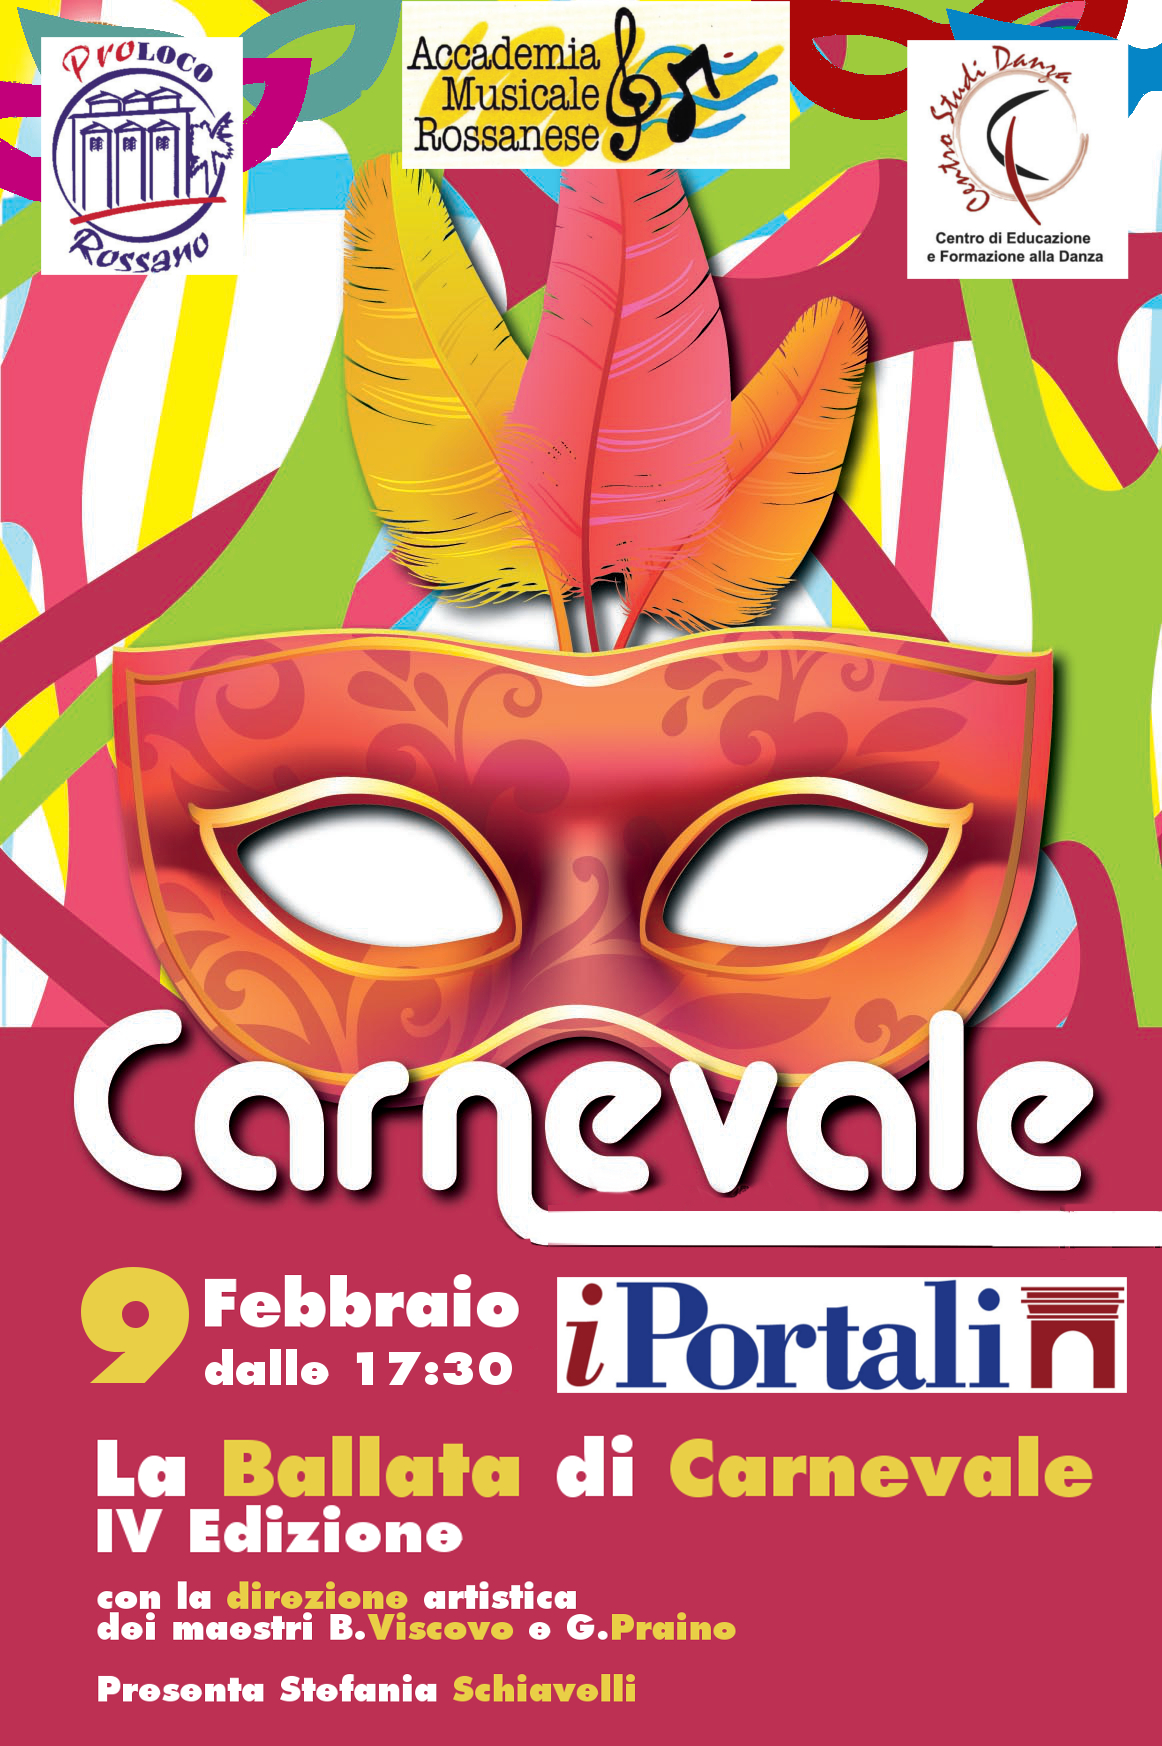 Locandina Carnevale 2016 Portali Informazione E Comunicazione